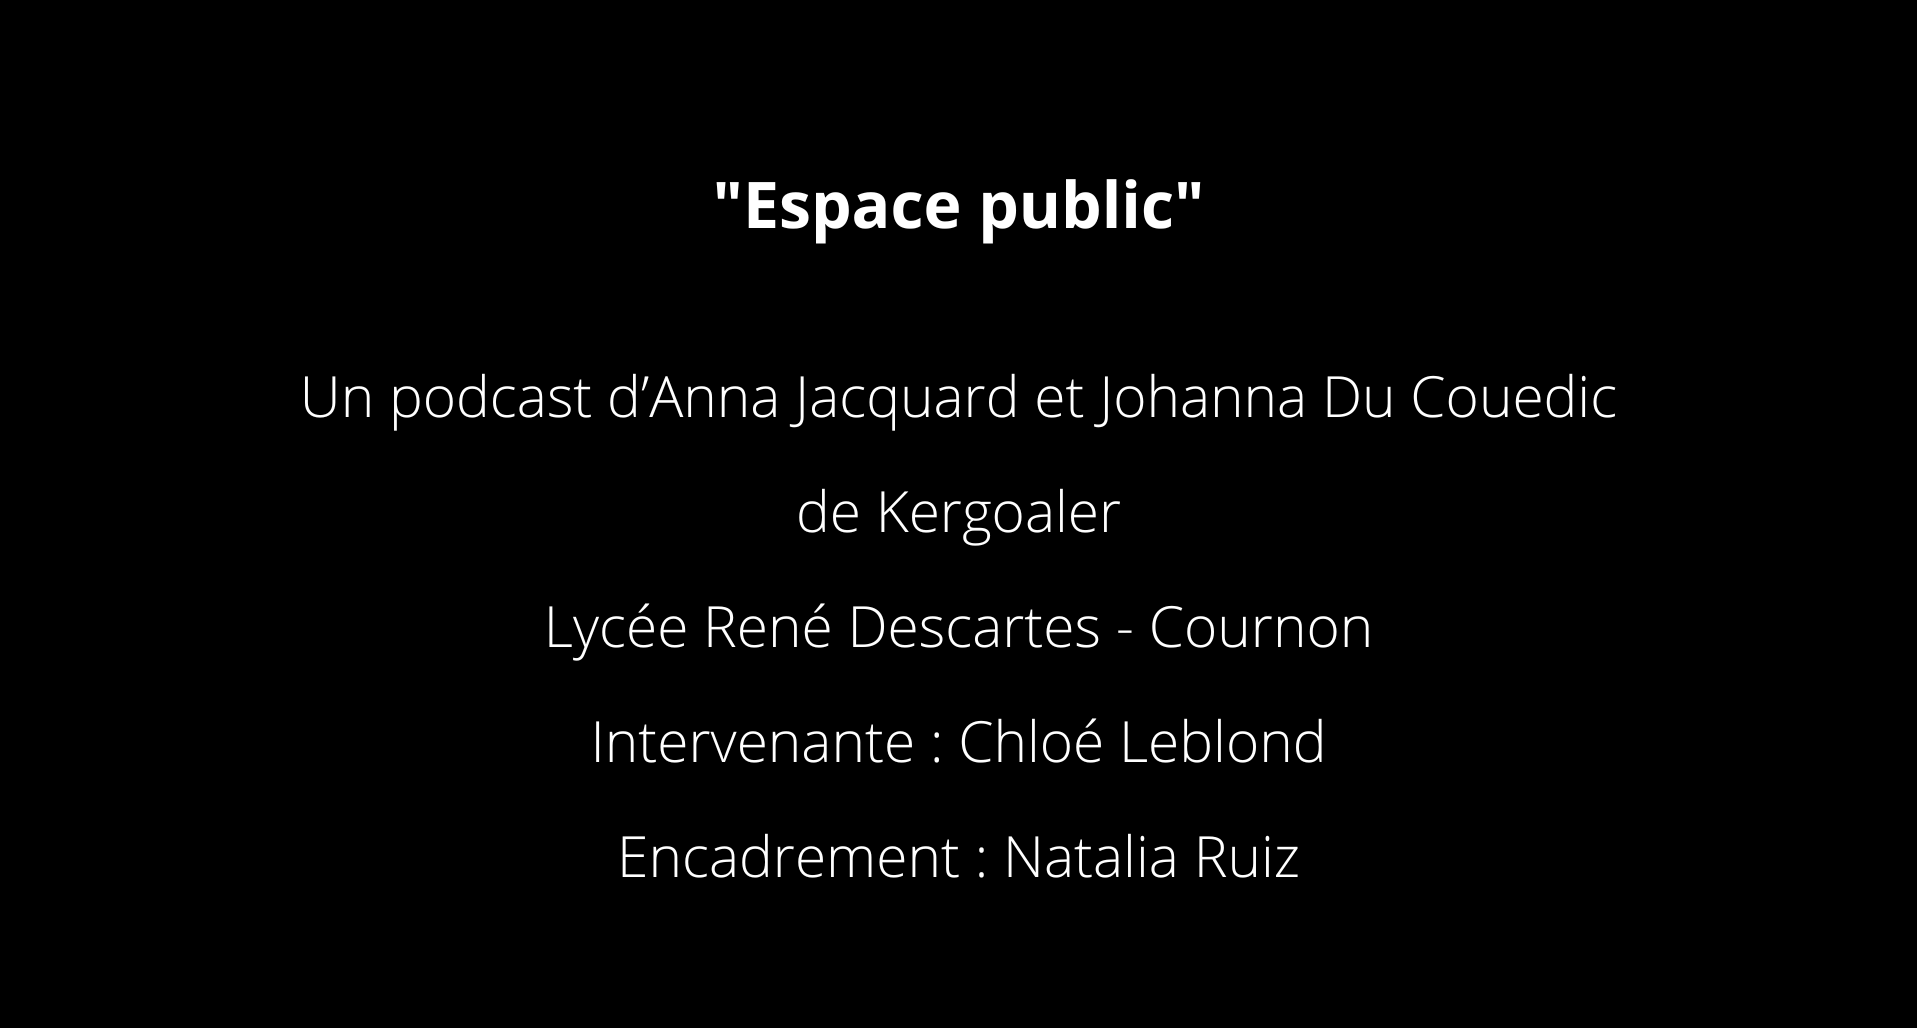 Espace public Un podcast d’Anna Jacquard et Johanna Du Couedic de Kergoaler Lycée René Descartes - Cournon Intervenante Chloé Leblond Encadrement Natalia Ruiz